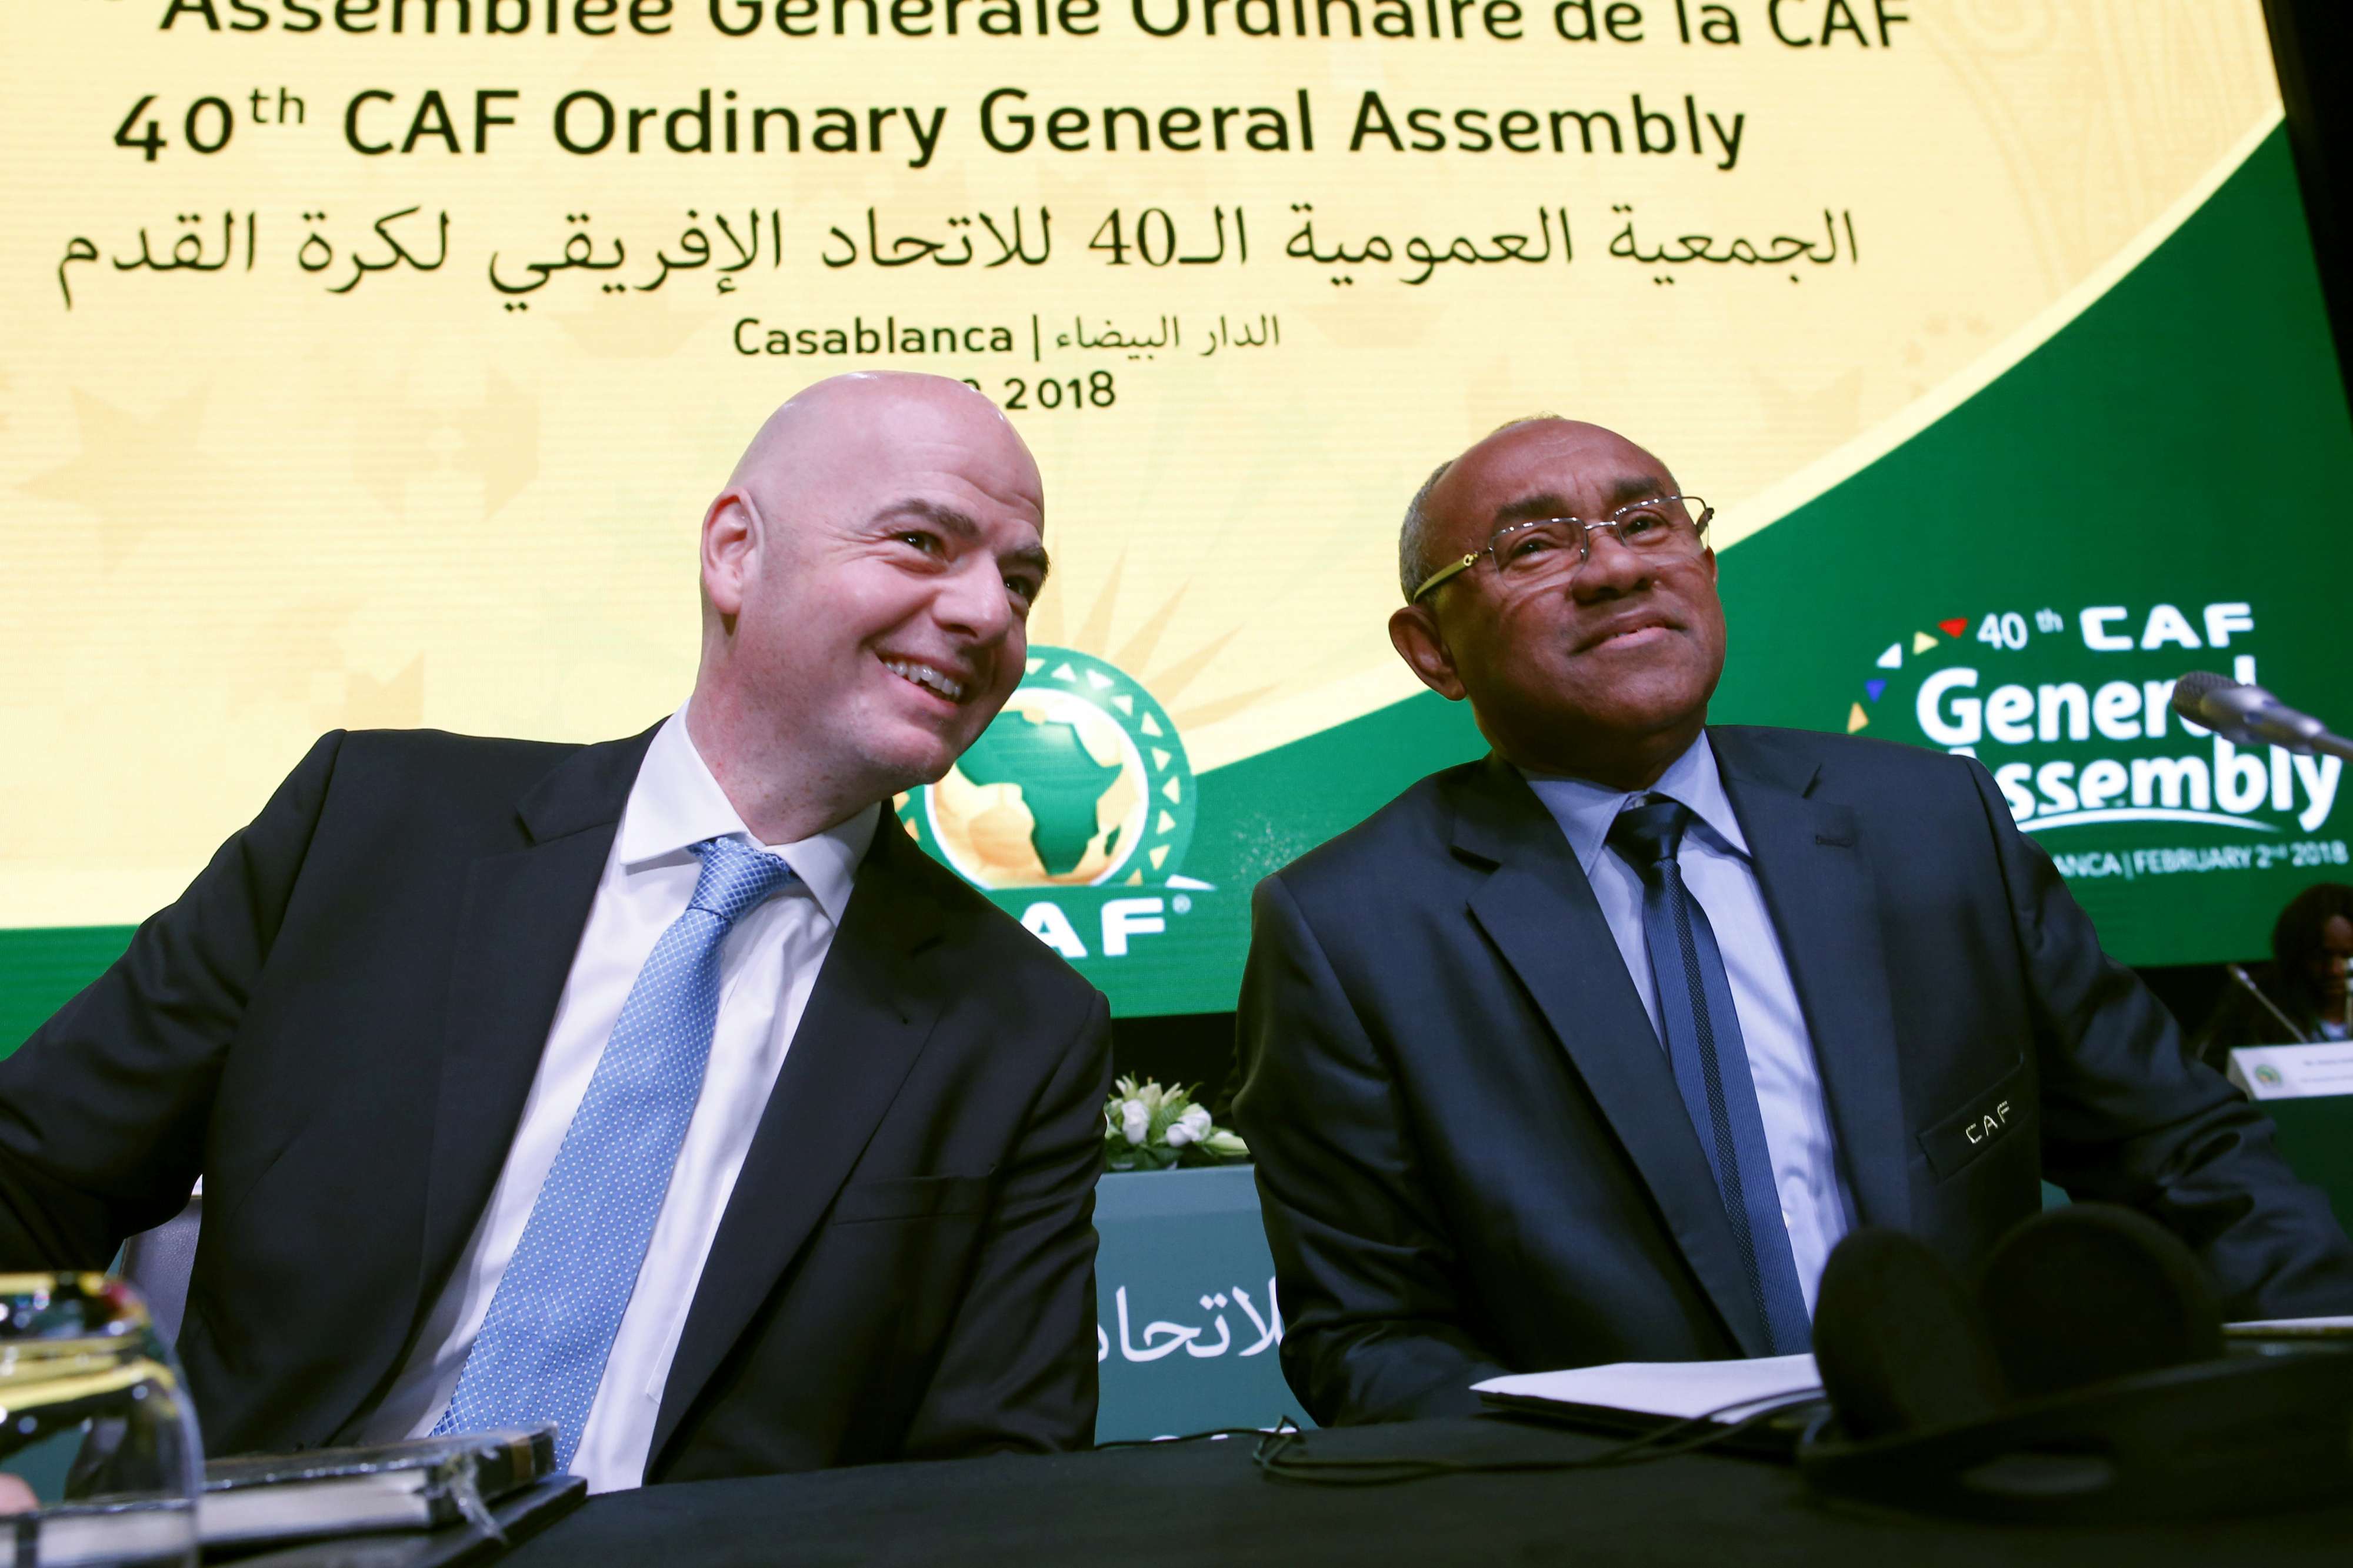 ئيس الاتحاد الأفريقيأحمد أحمد ورئيس الفيفا جياني إنفانتينو في افتتاح الجمعية العامة للاتحاد الأفريقي بالدار البيضاء